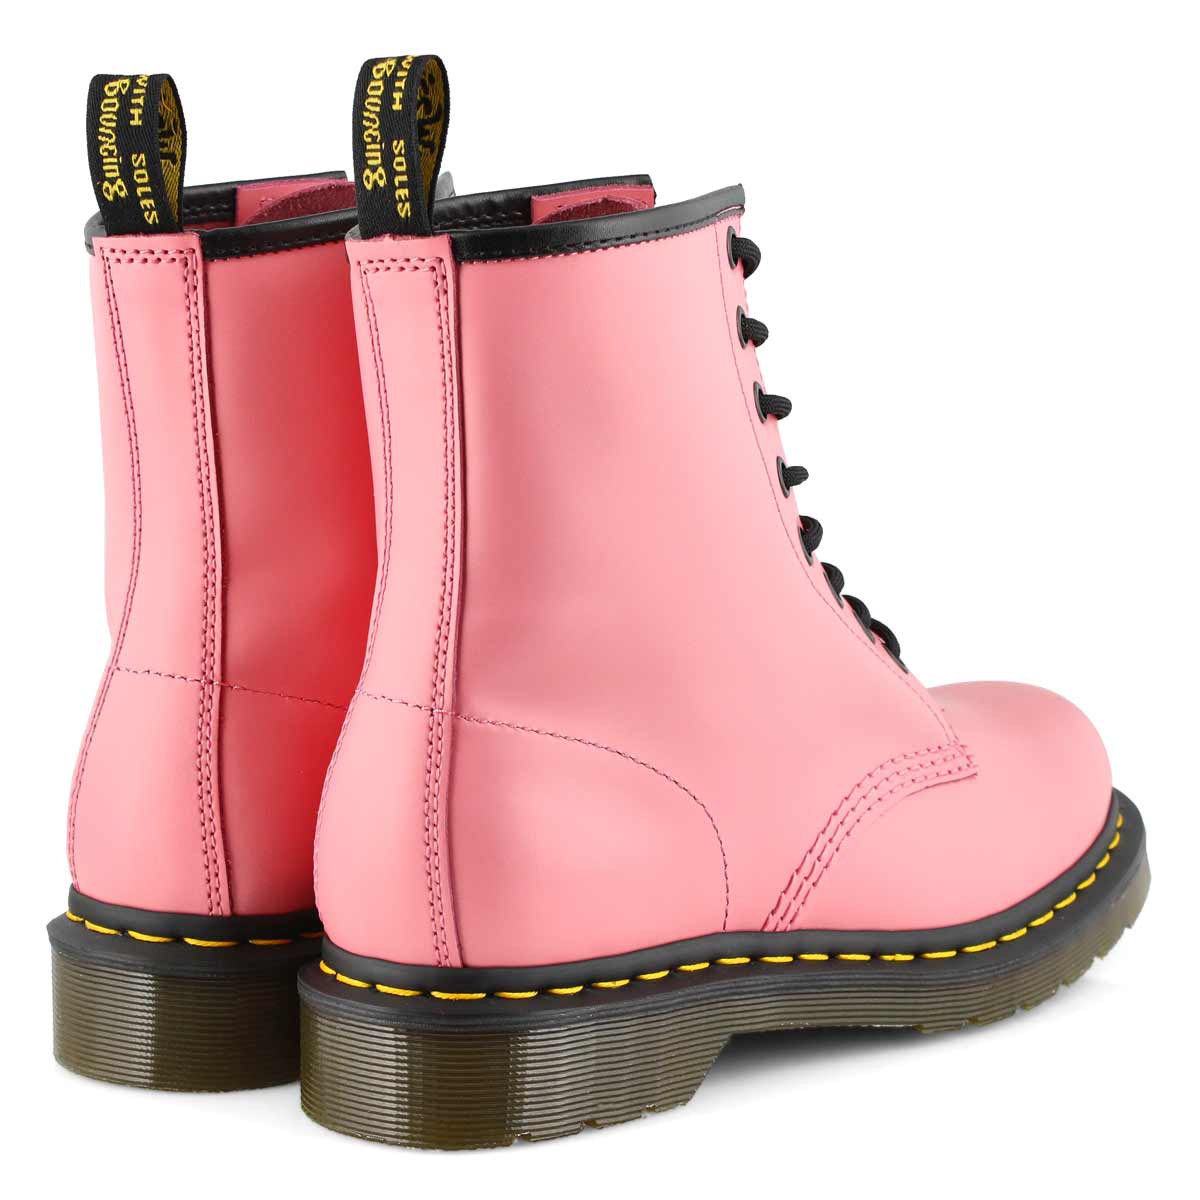 Women's 1460 8 Eye Smooth Boot - Acid Pink